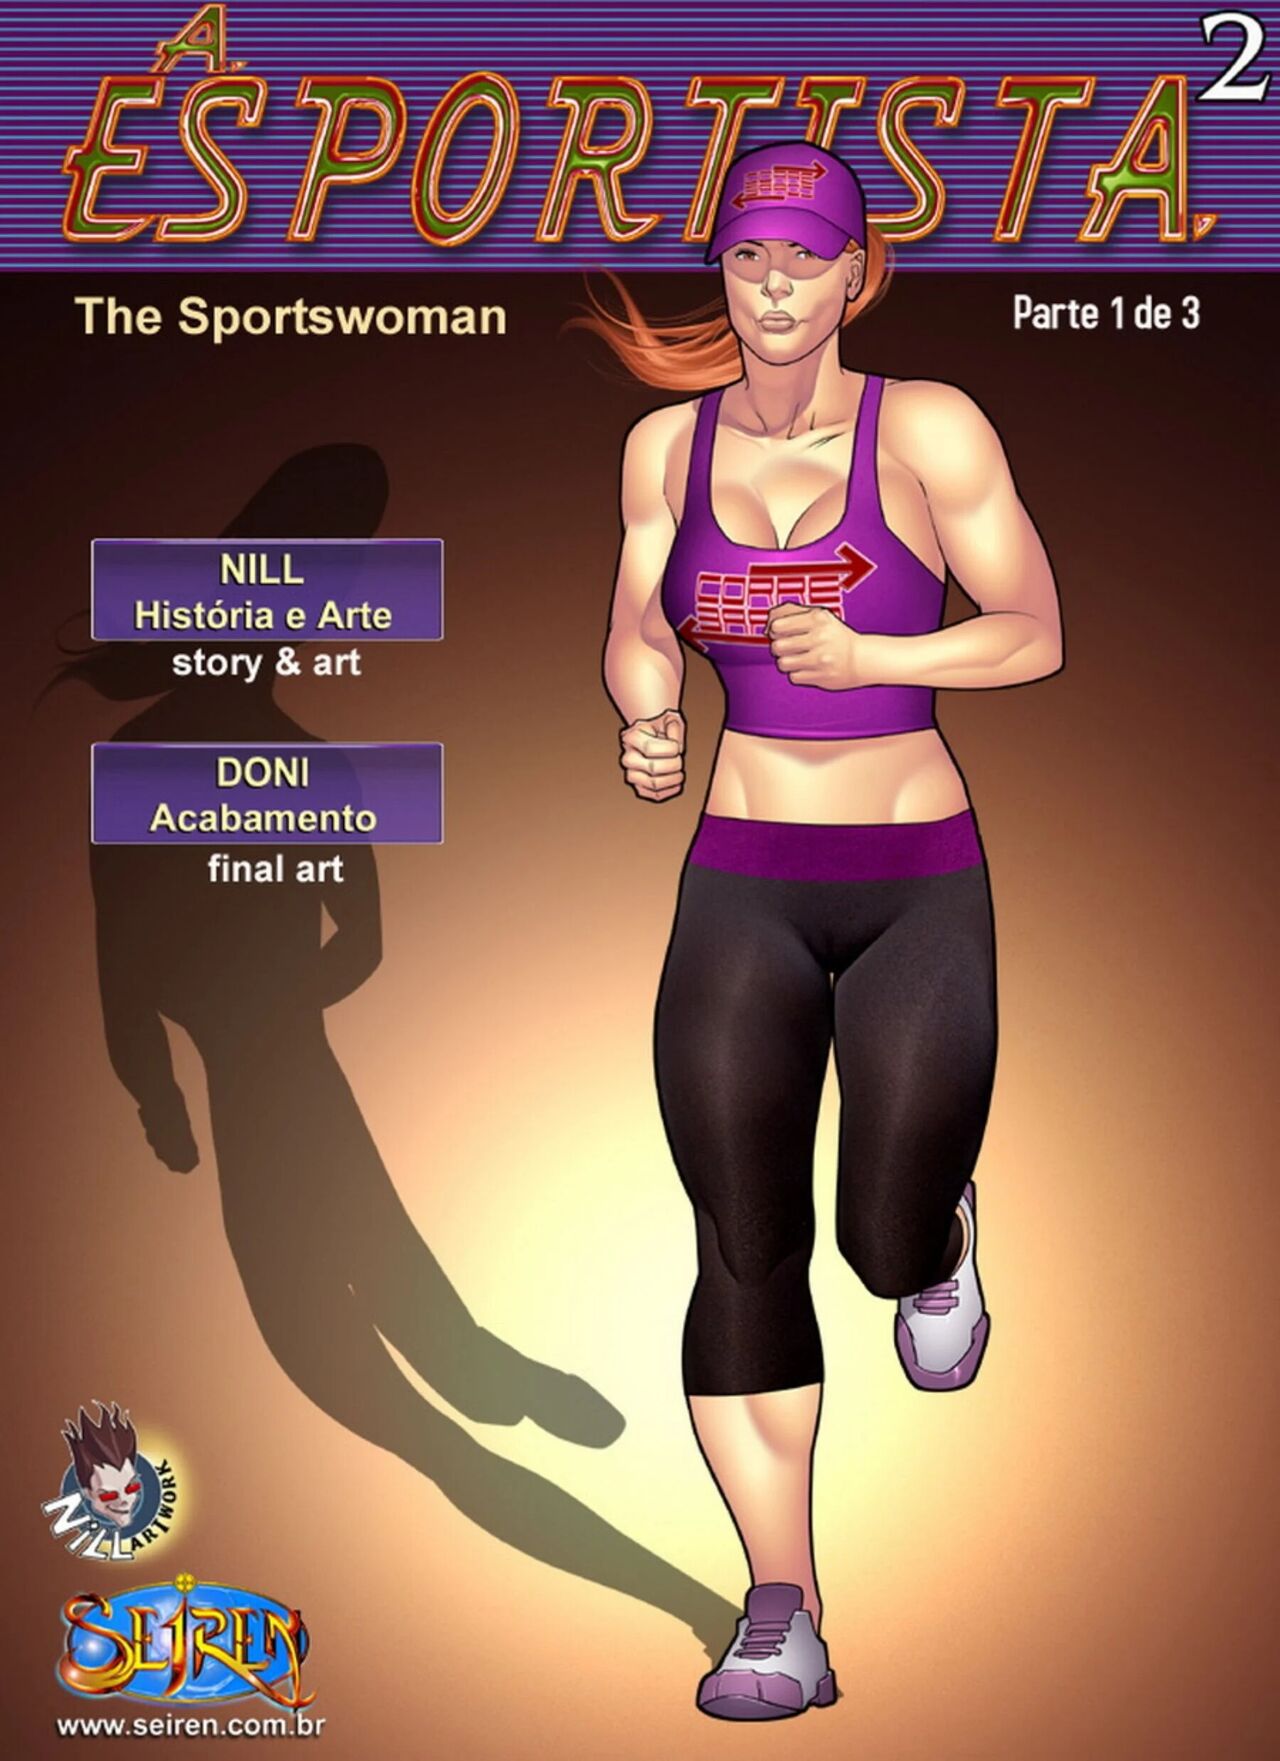 The Sportswoman [Seiren] - 2.1 - english 1